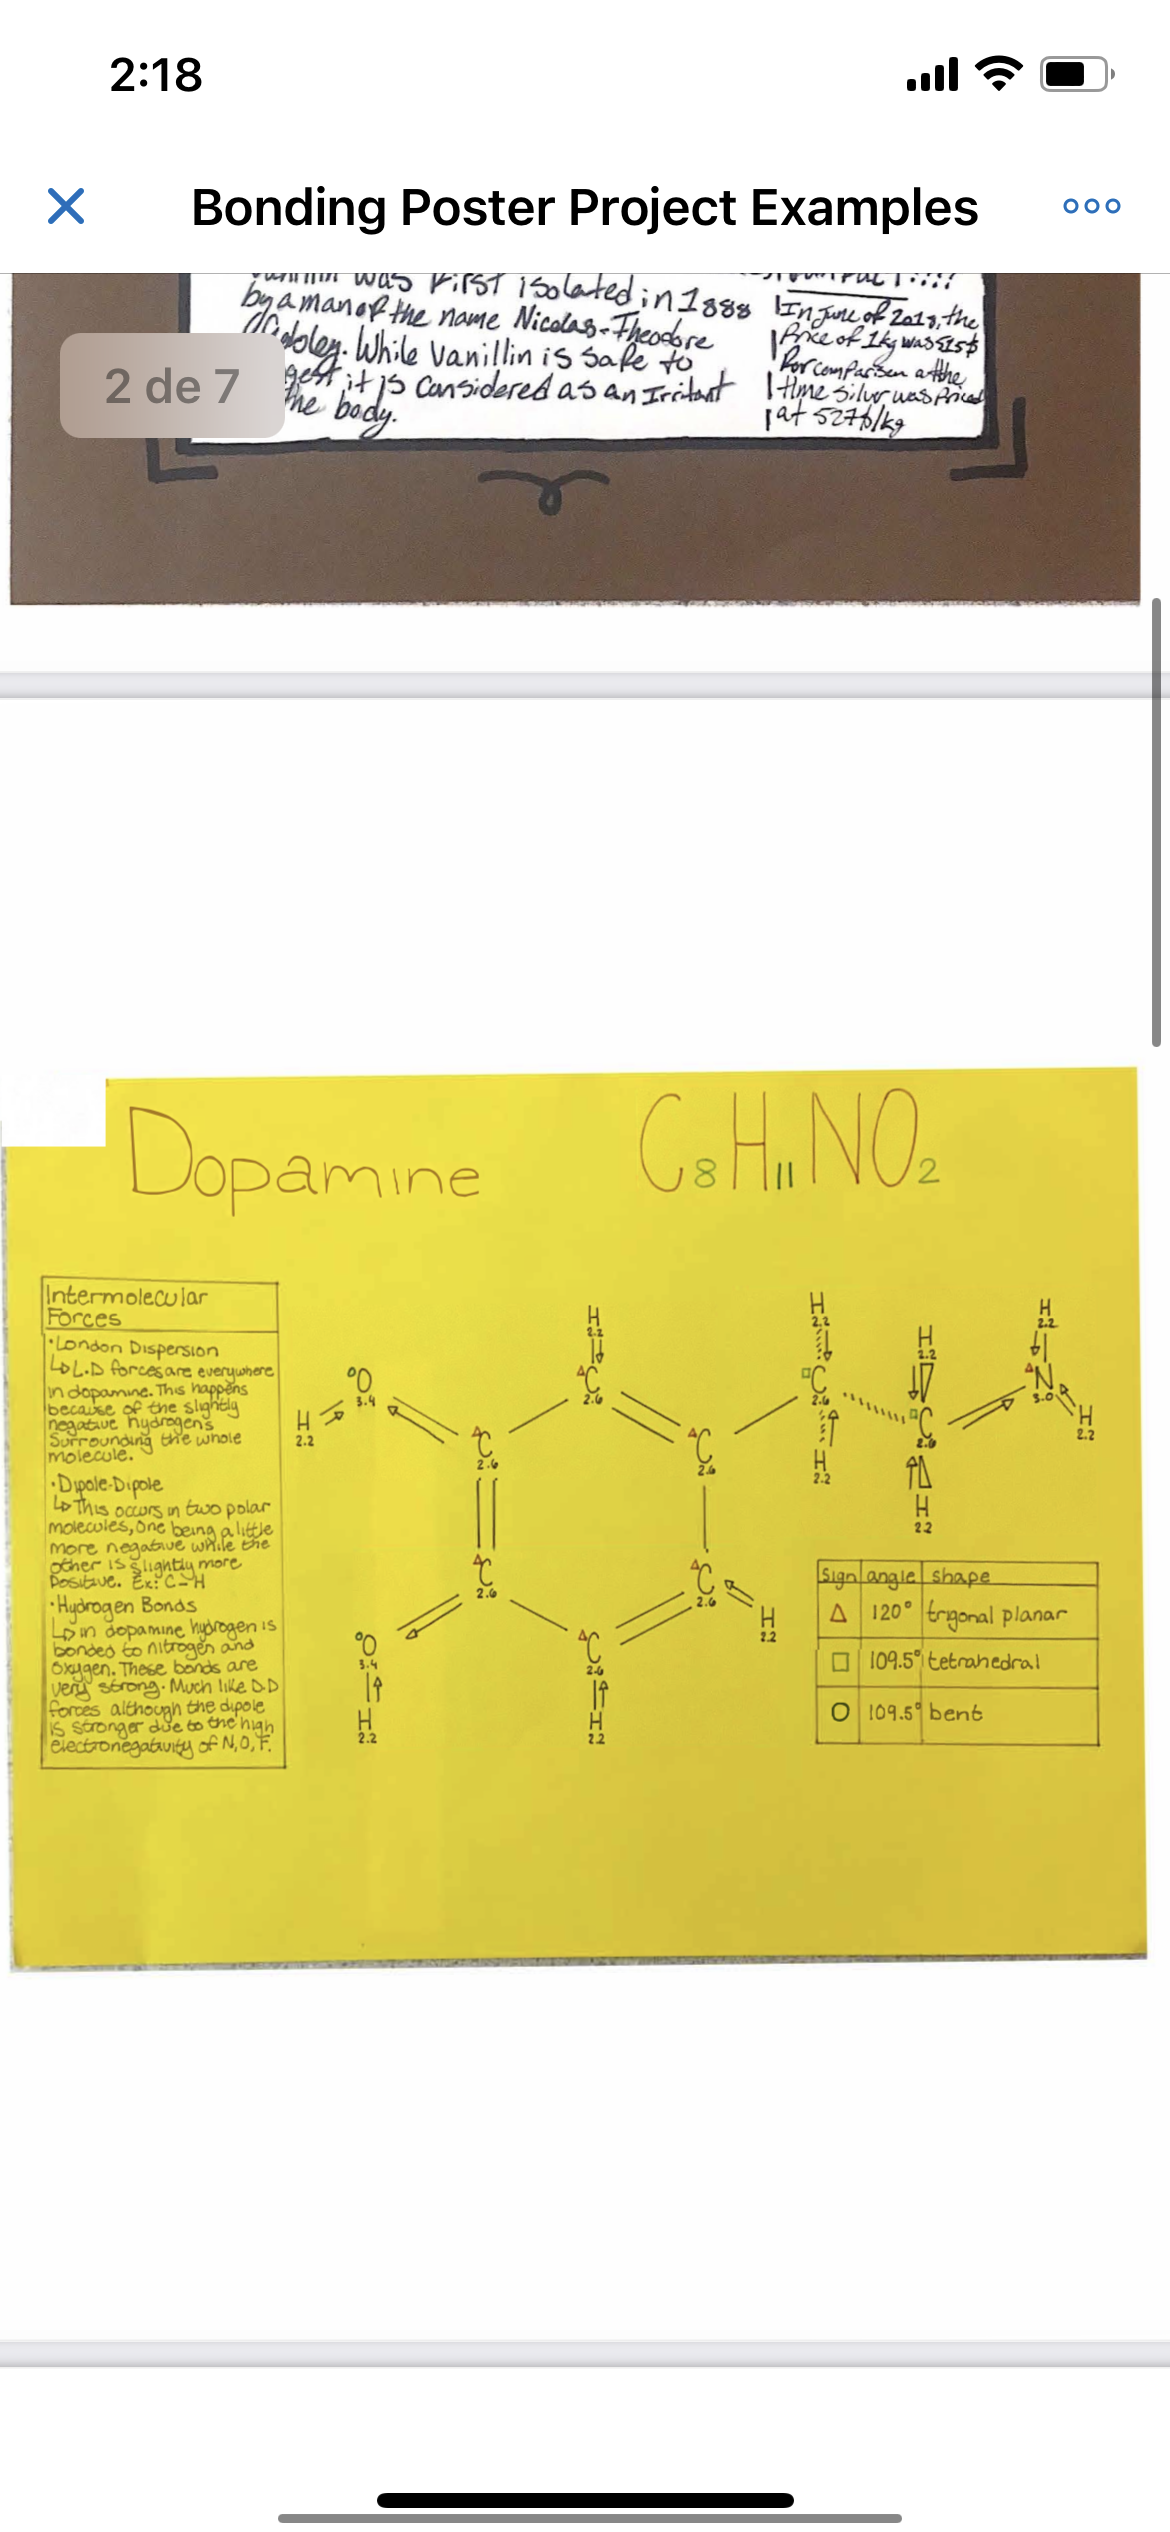 Chemistry bonding project (dopamine)